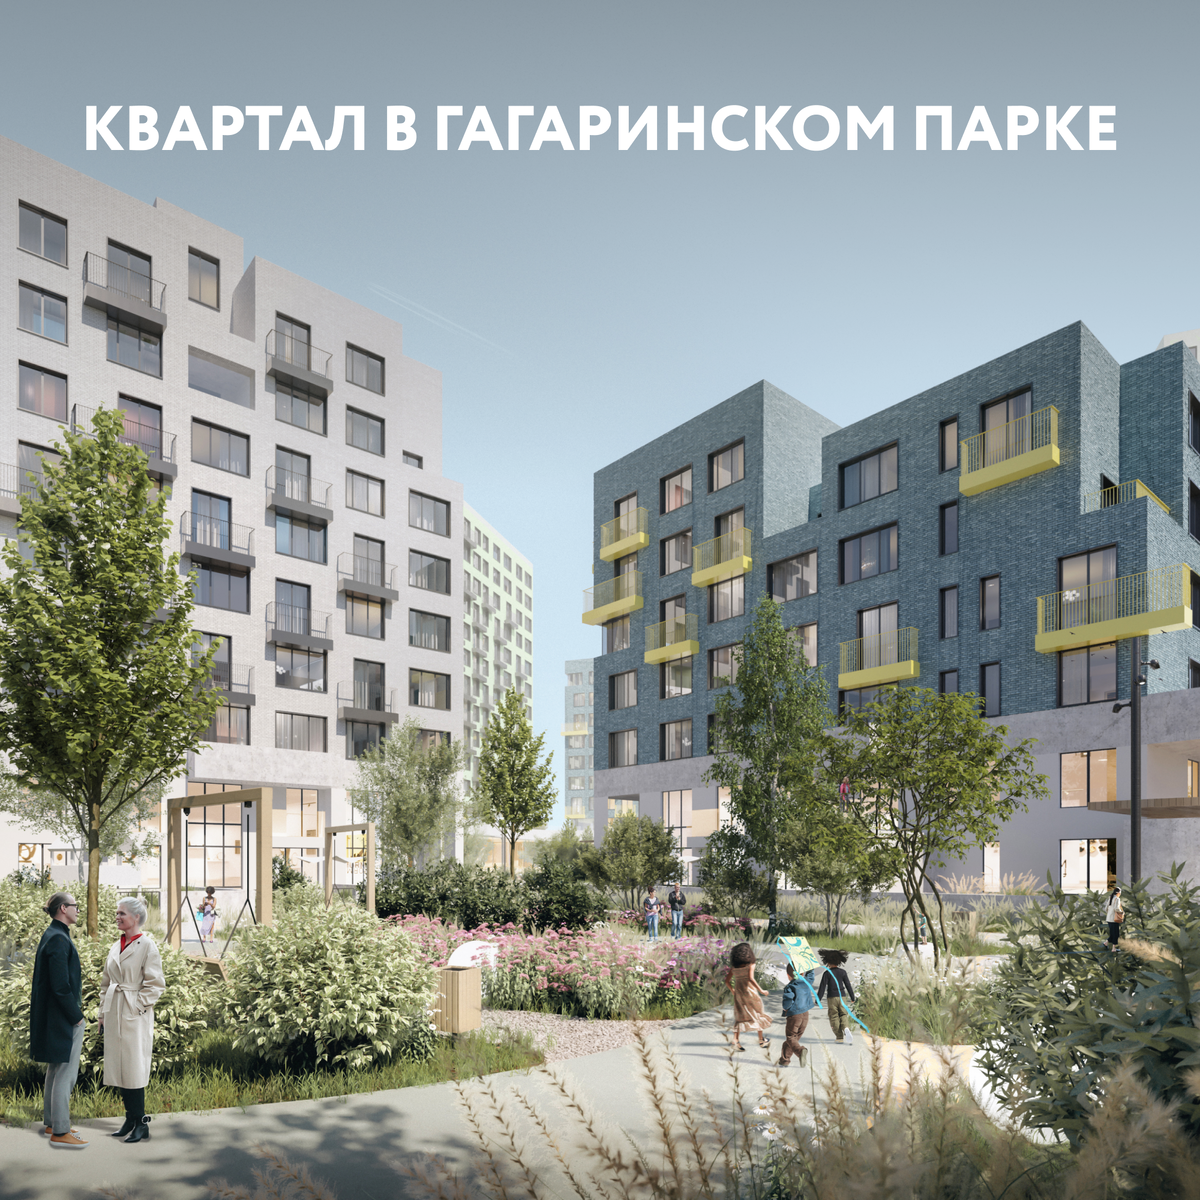 
Не так давно мы начали строительство нового проекта, который охотно ждет весь город.

Речь идет о Квартале в Гагаринском парке.